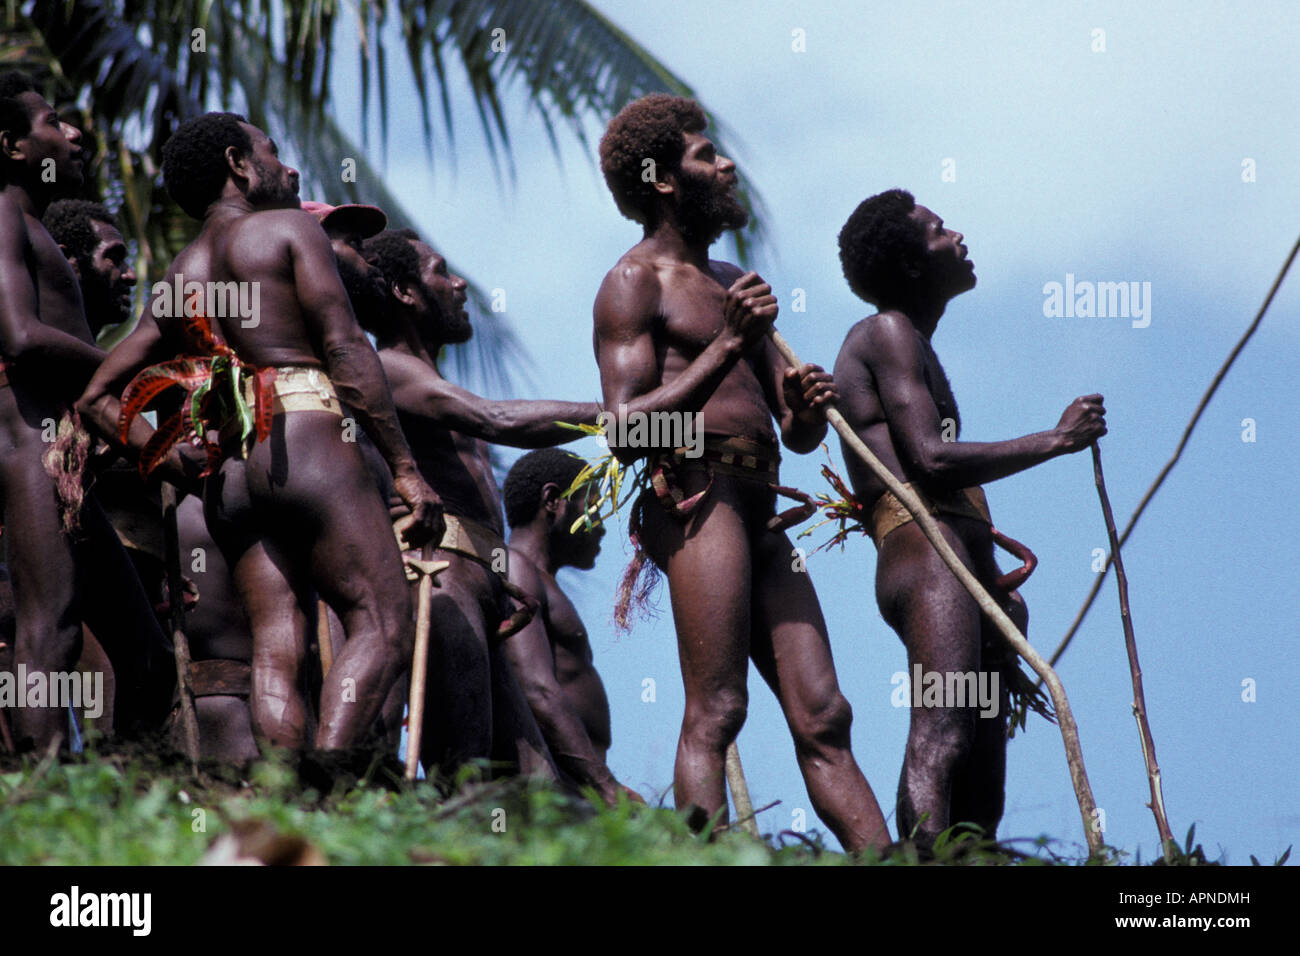 Oceano Pacifico, Vanuatu, Isola di Pentecoste, nativi isolani guardando il tradizionale paese di Pentecoste immersioni subacquee o N'gol Foto Stock